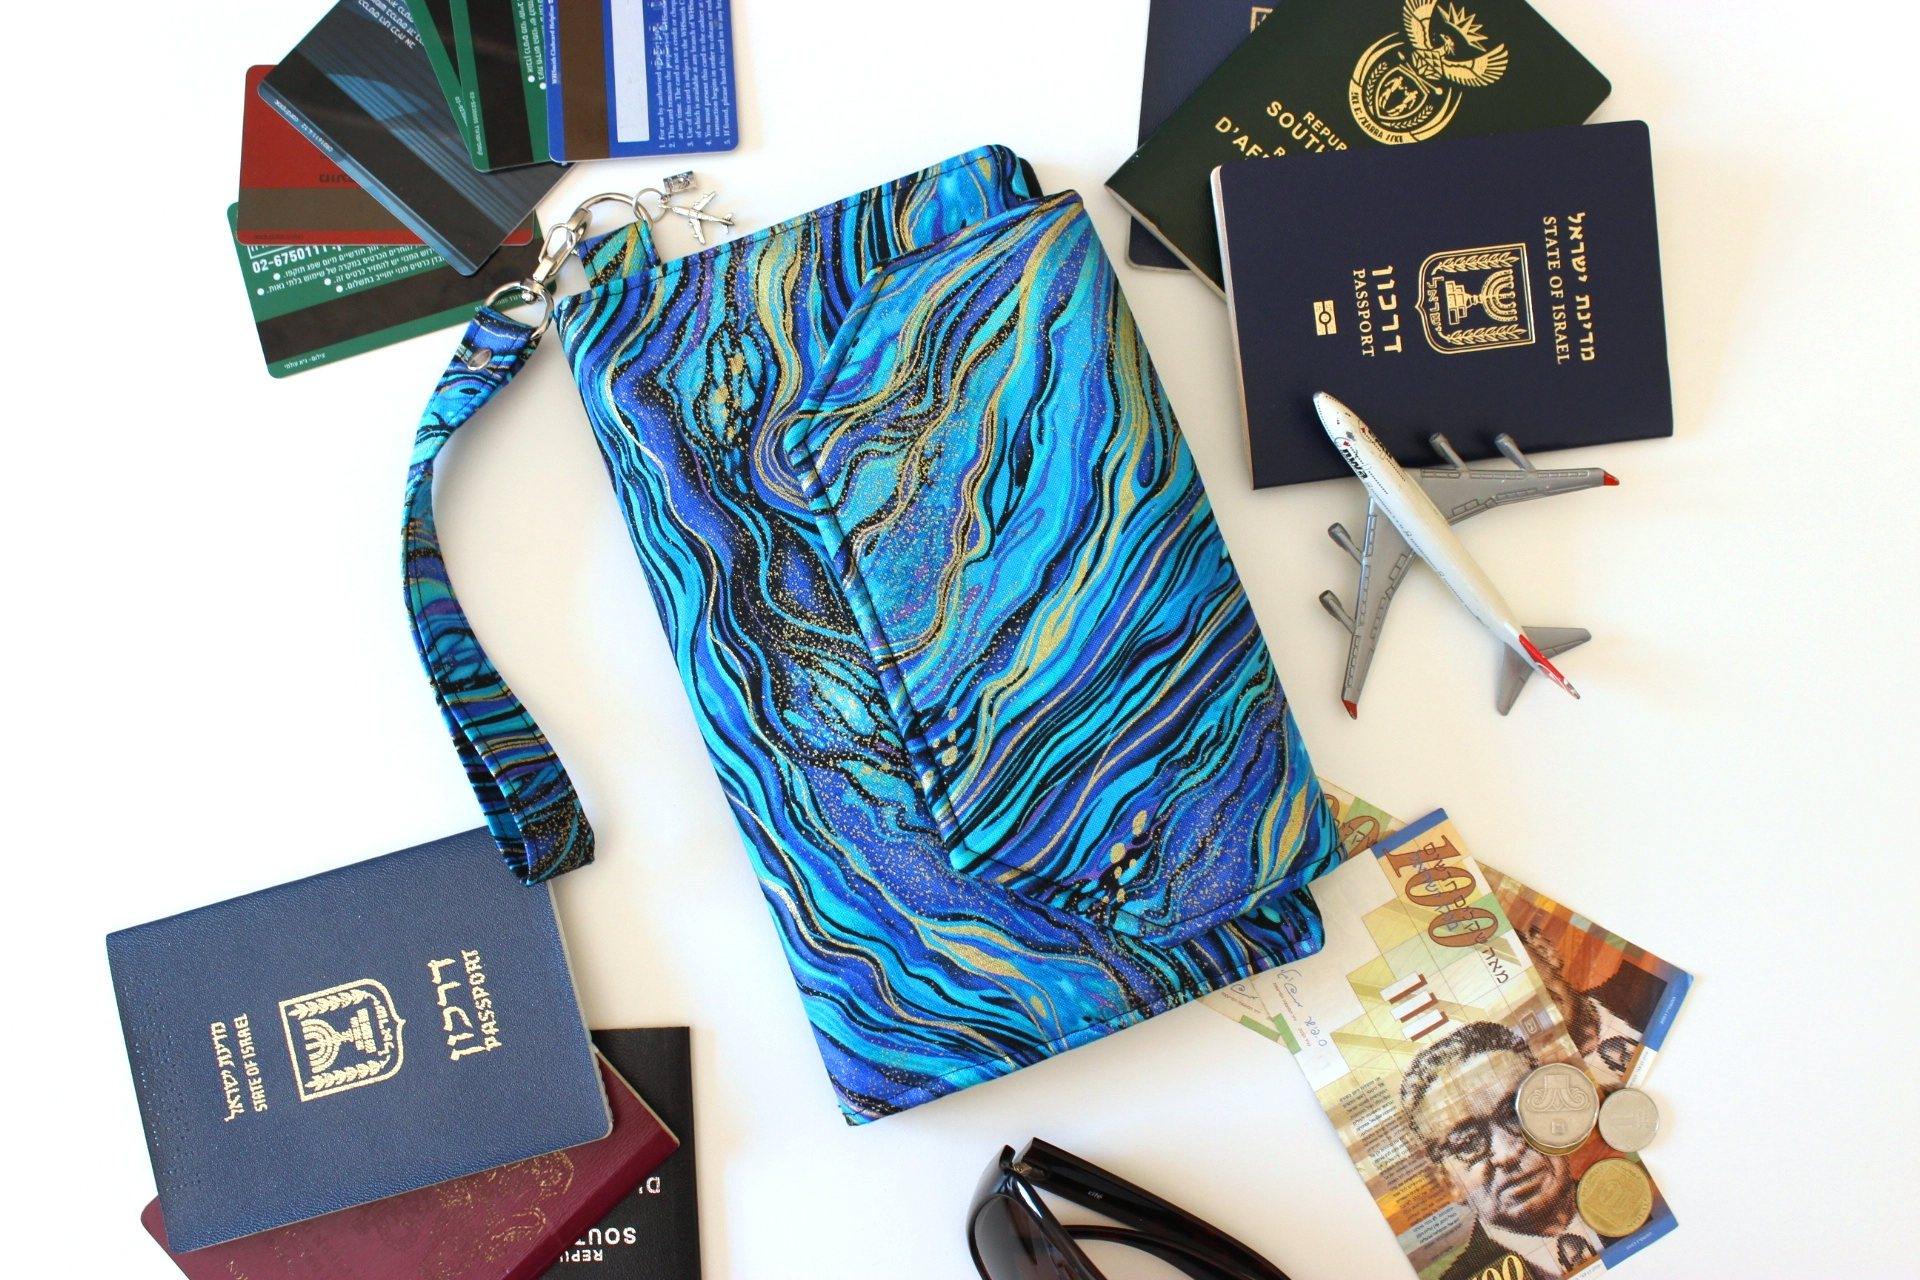 Kikkerland Passport Holder Case in Blue, for Travel Documents